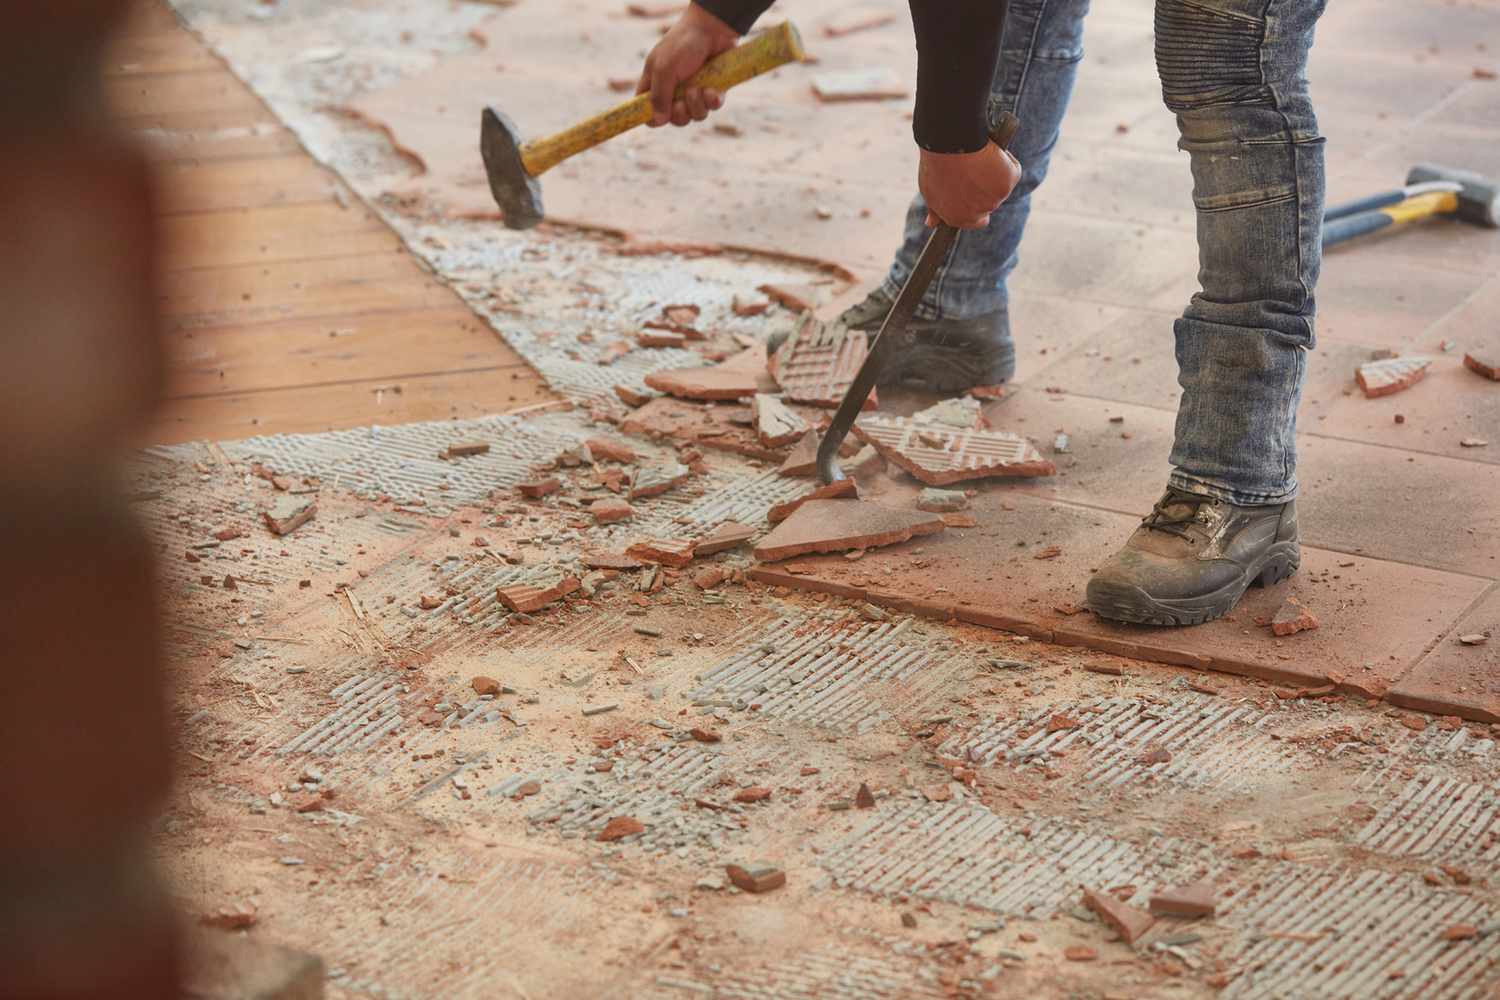 Ladrilhos de piso de cerâmica sendo removidos manualmente com um cinzel de alvenaria e um raspador de piso